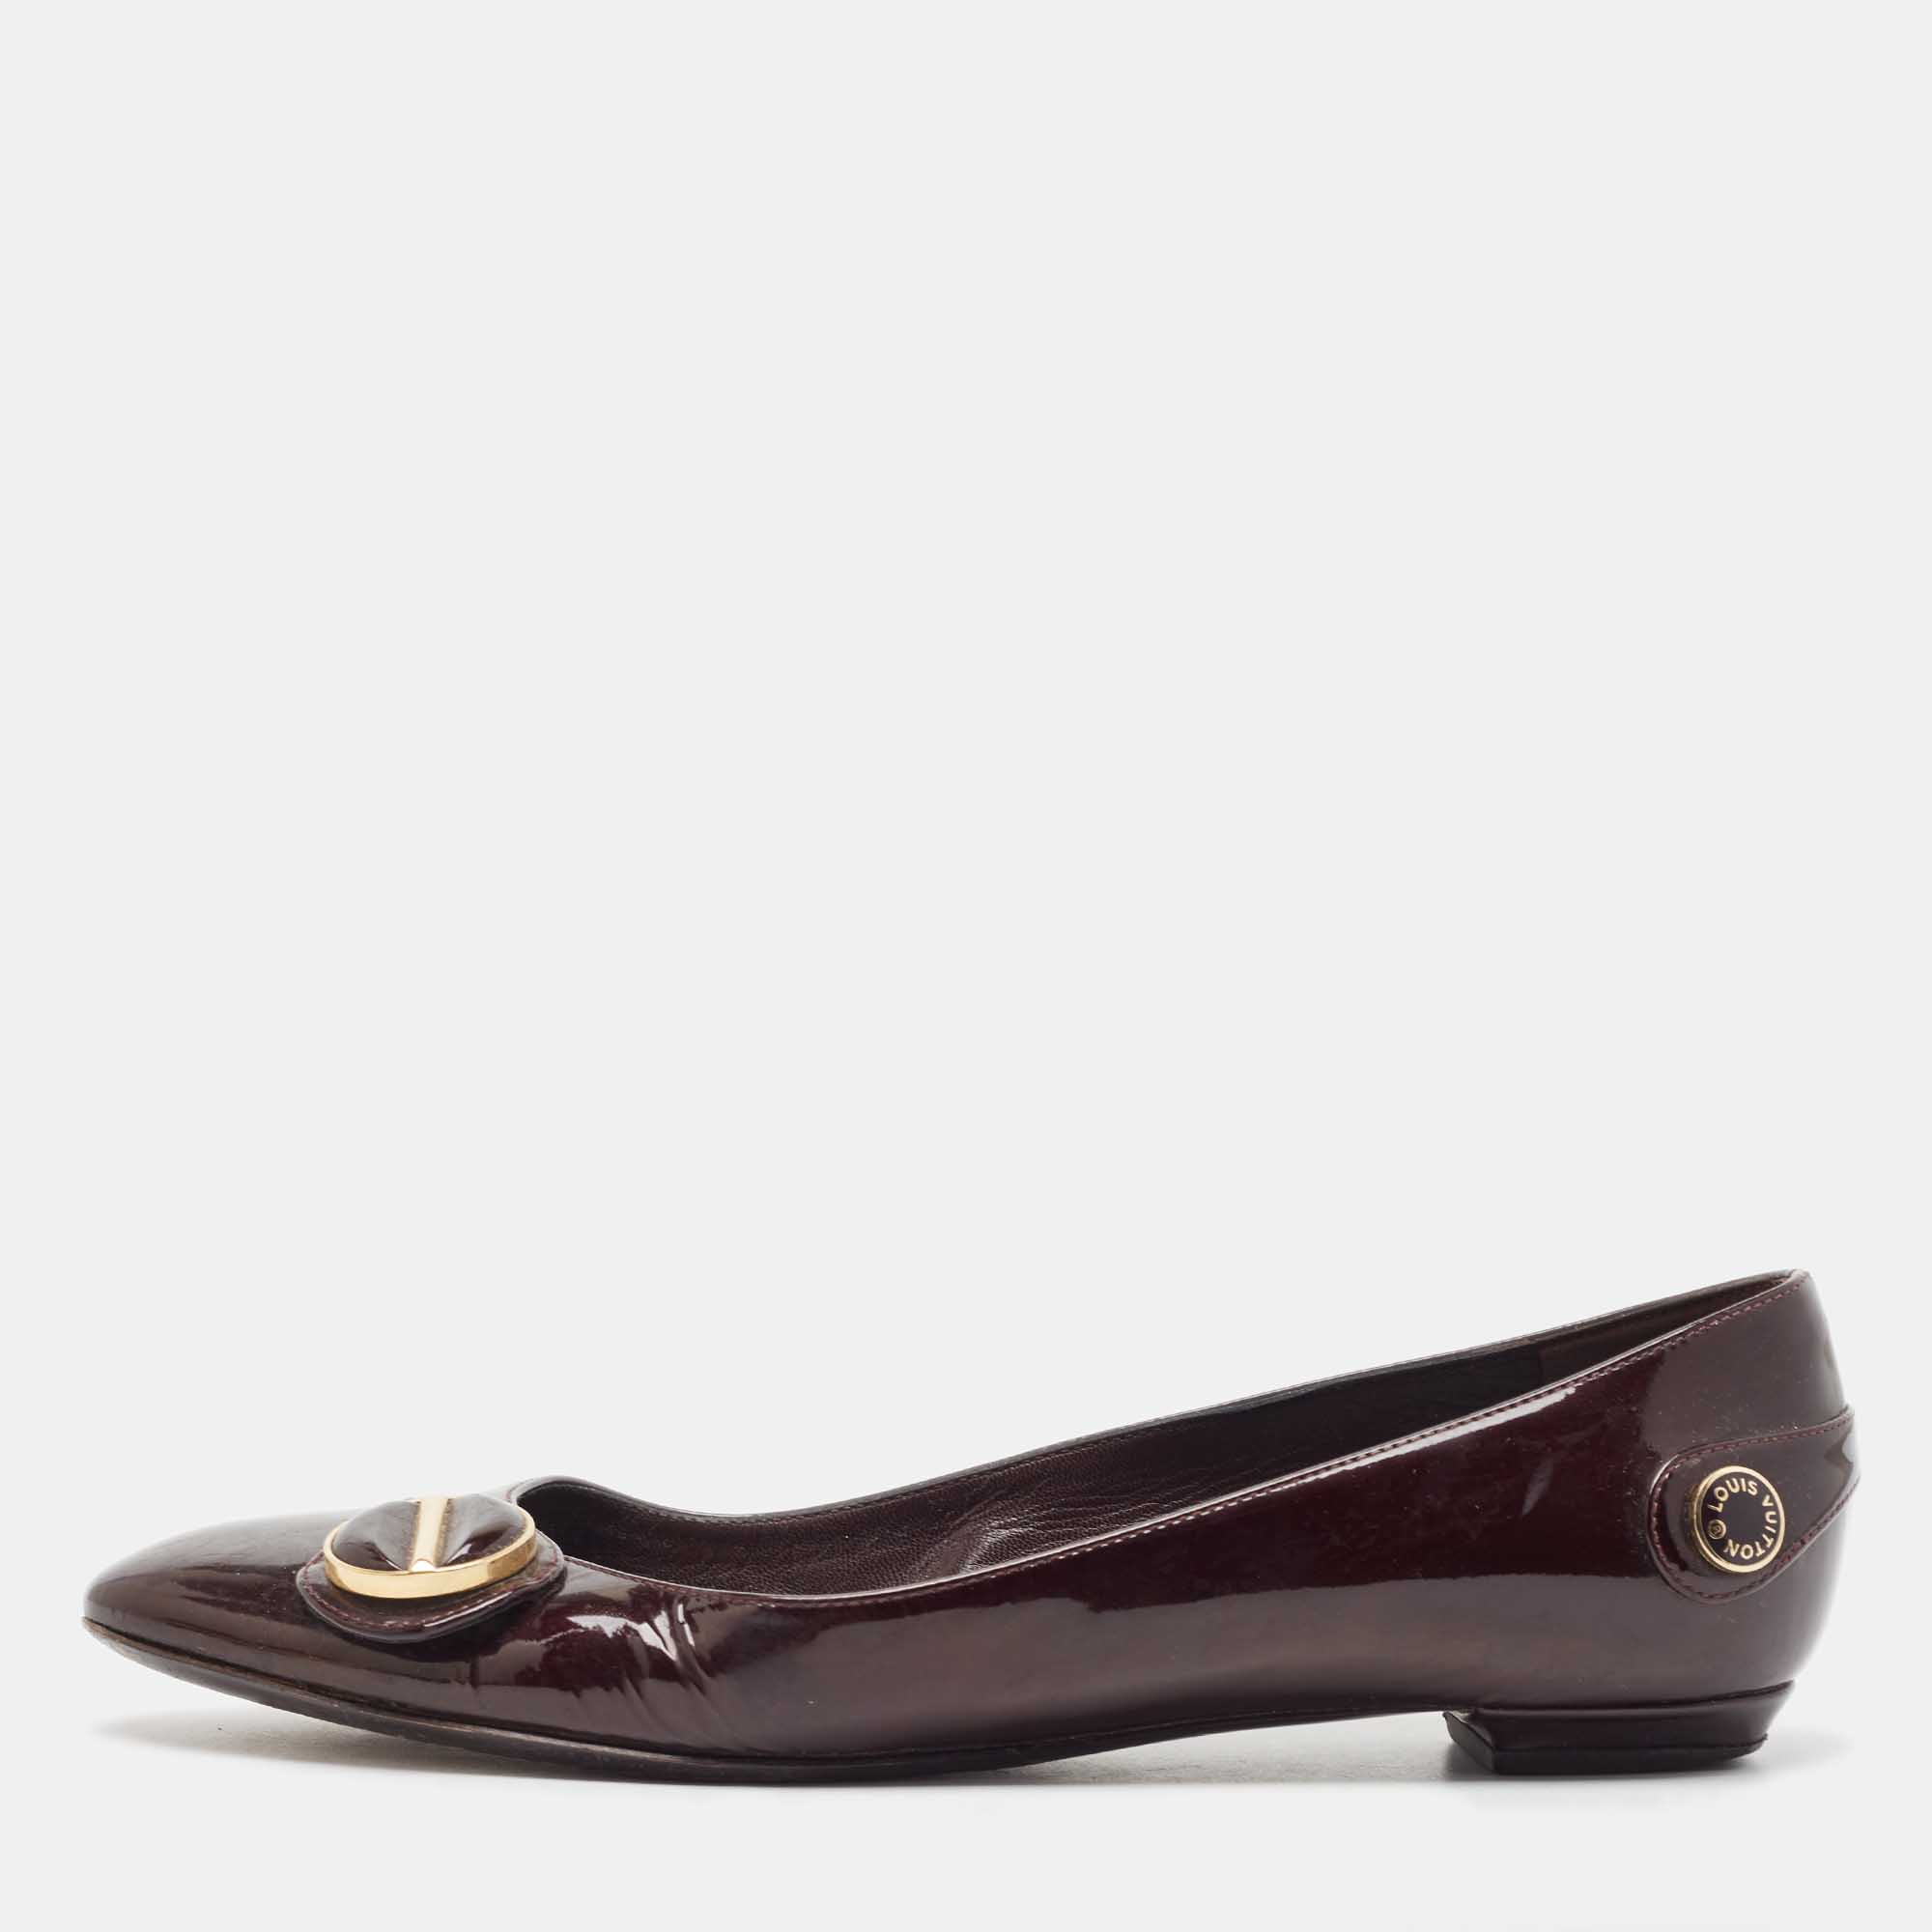 Louis Vuitton Burgundy Patent Leather Ballet Flats Size 37.5